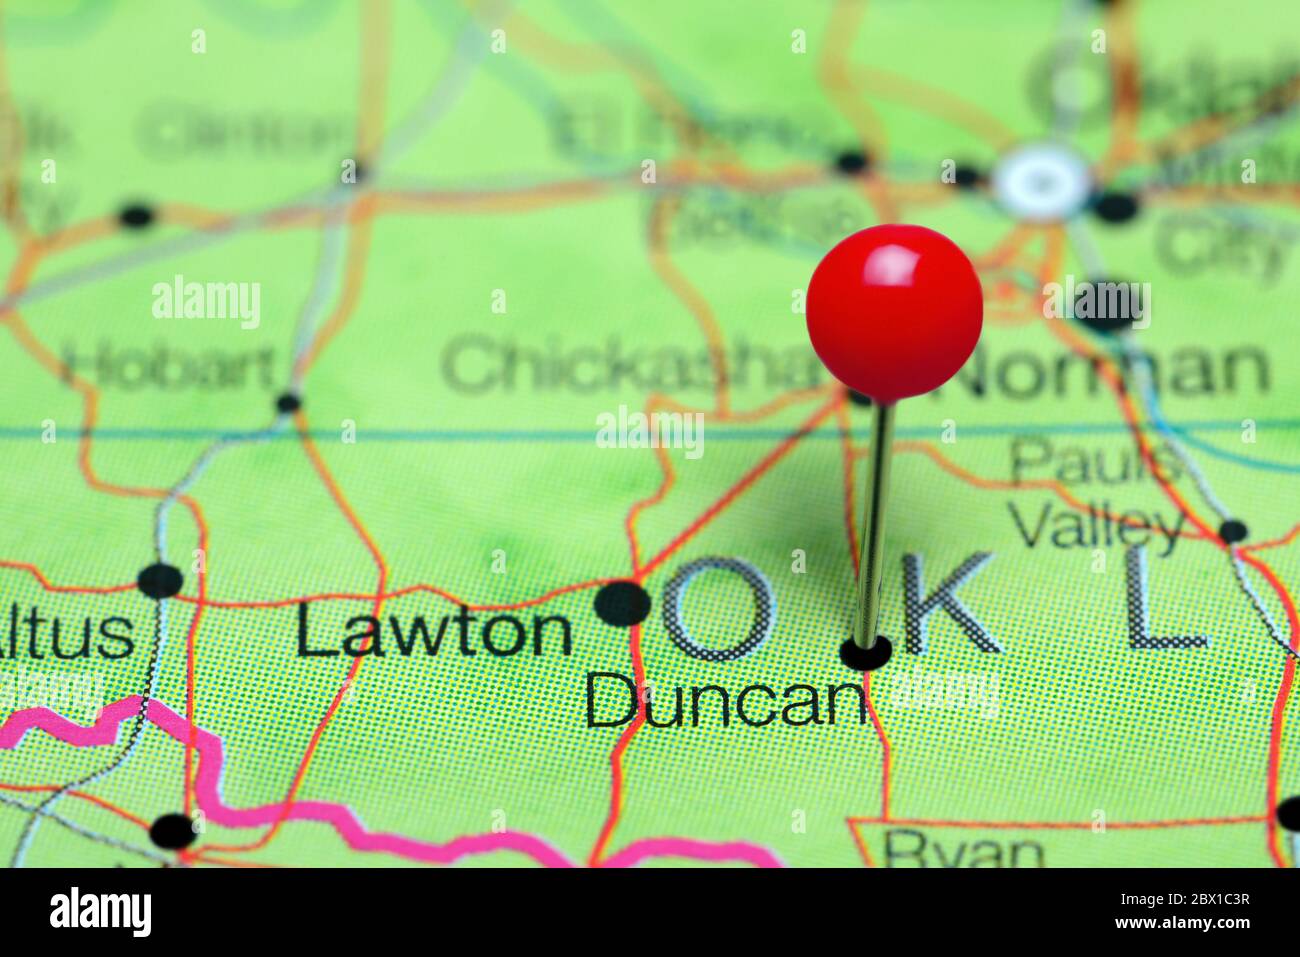 Duncan cubrió un mapa de Oklahoma, EE.UU Foto de stock